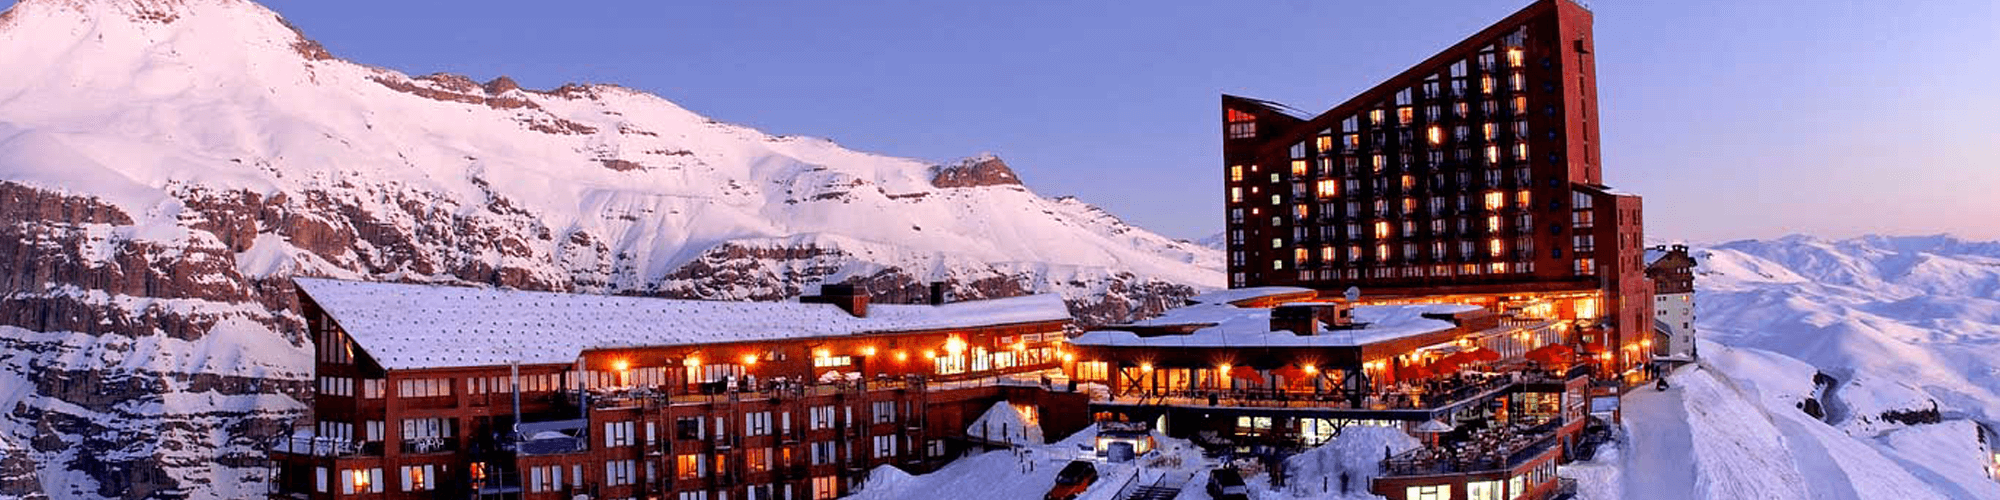 Valle Nevado: 5 motivos para conhecer a melhor infraestrutura dos Andes